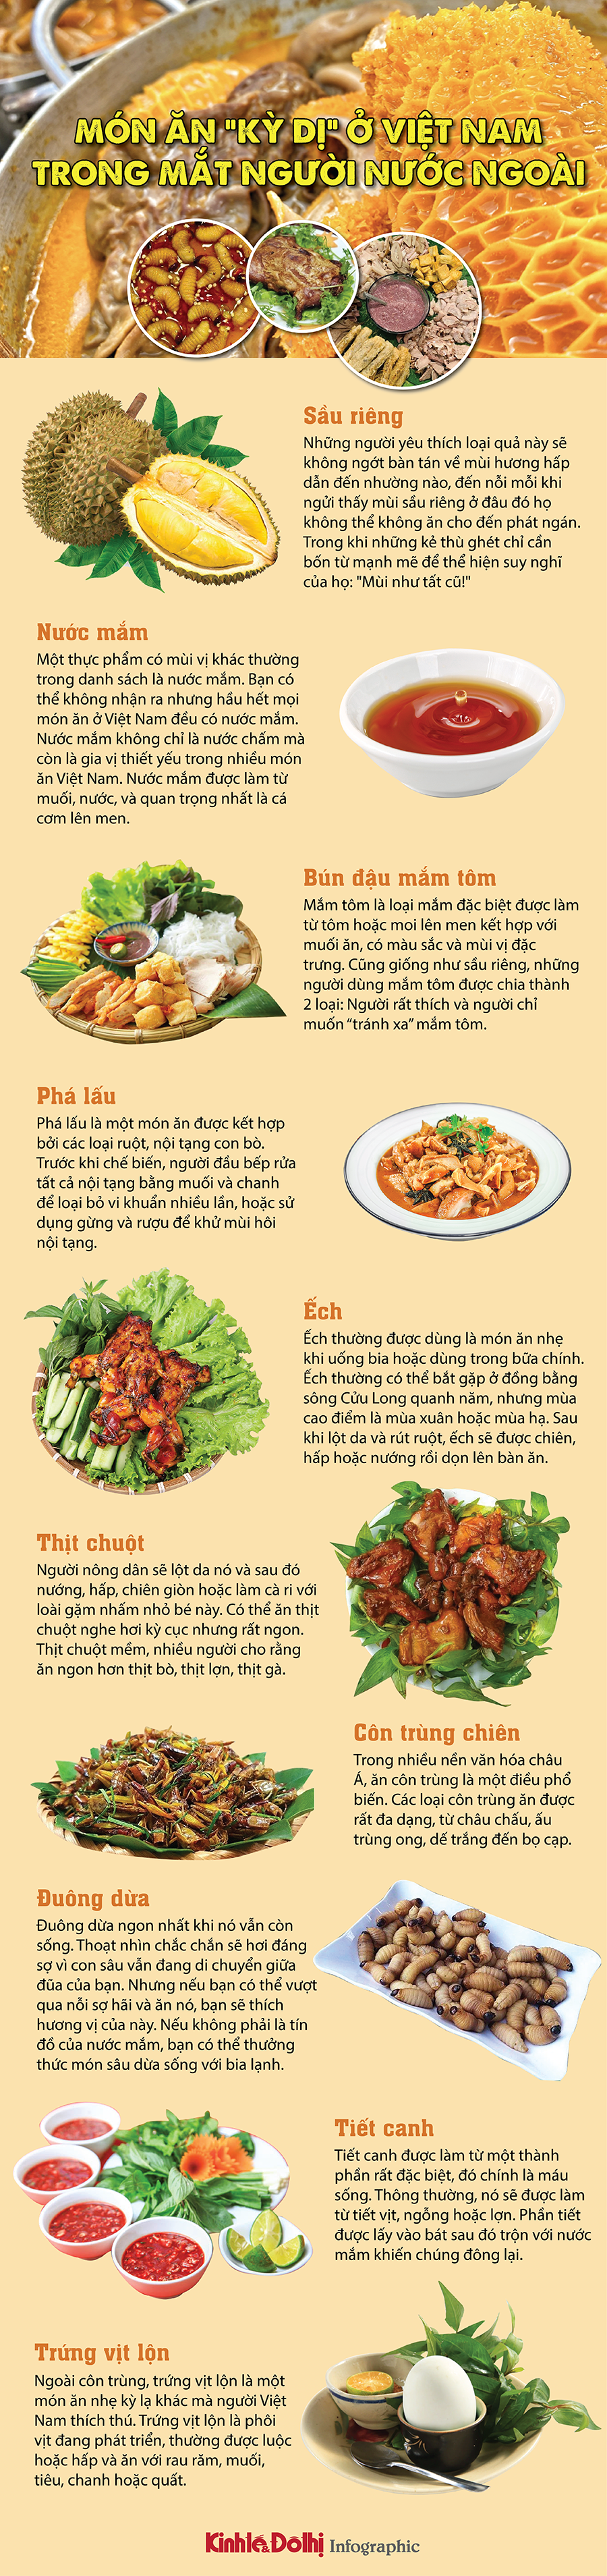 Top món ăn “kỳ dị” ở Việt Nam trong mắt người nước ngoài - Ảnh 1